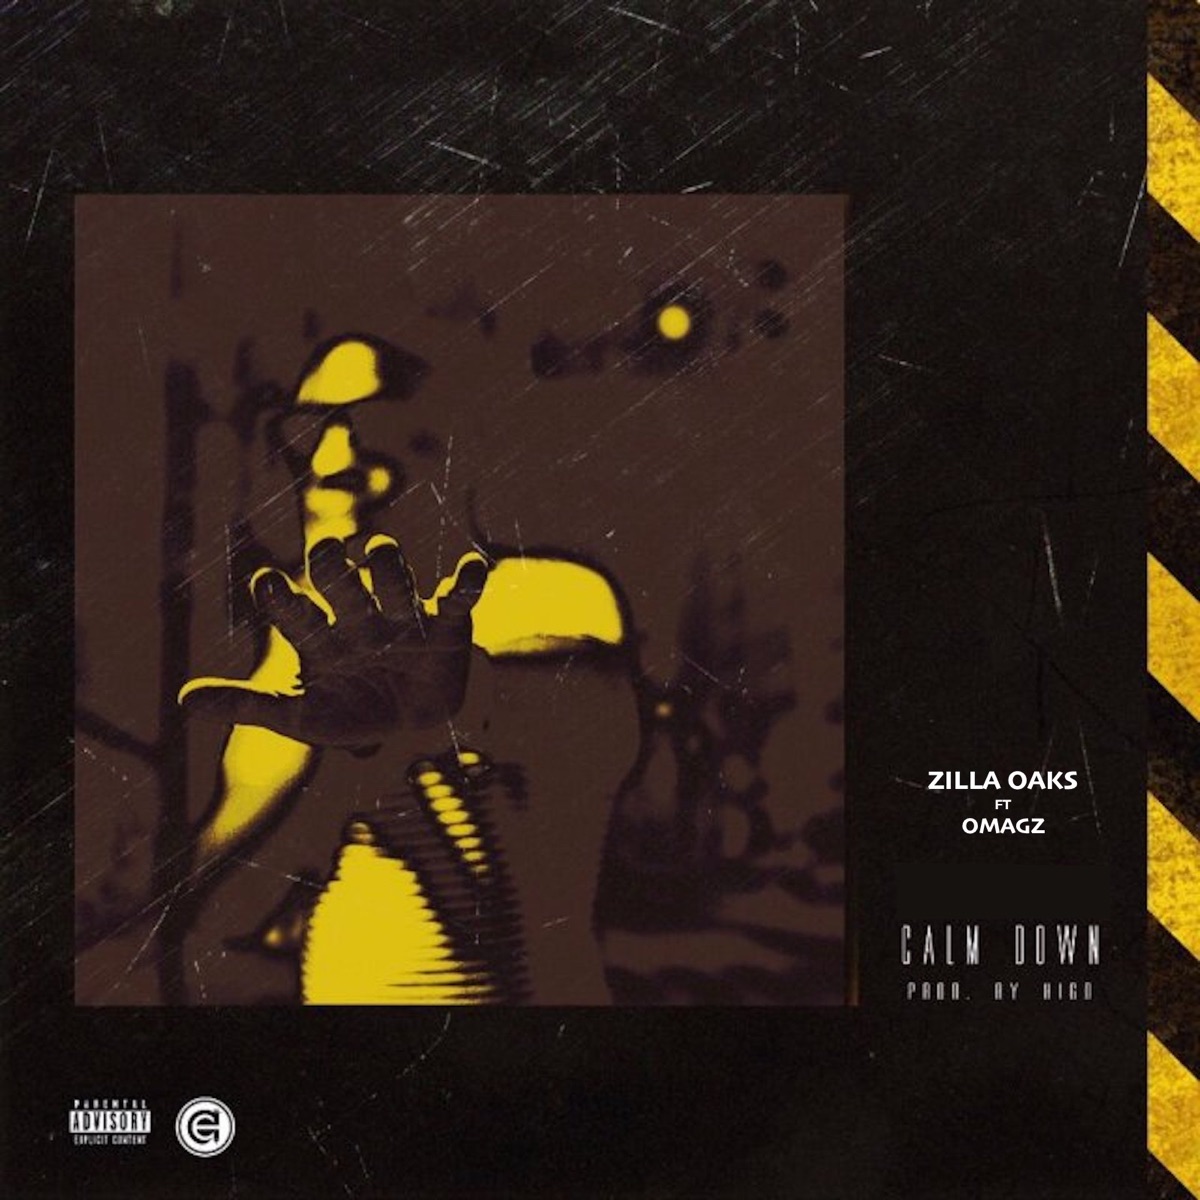 Zilla Oaks - Calm Down (feat. Omagz) - Single